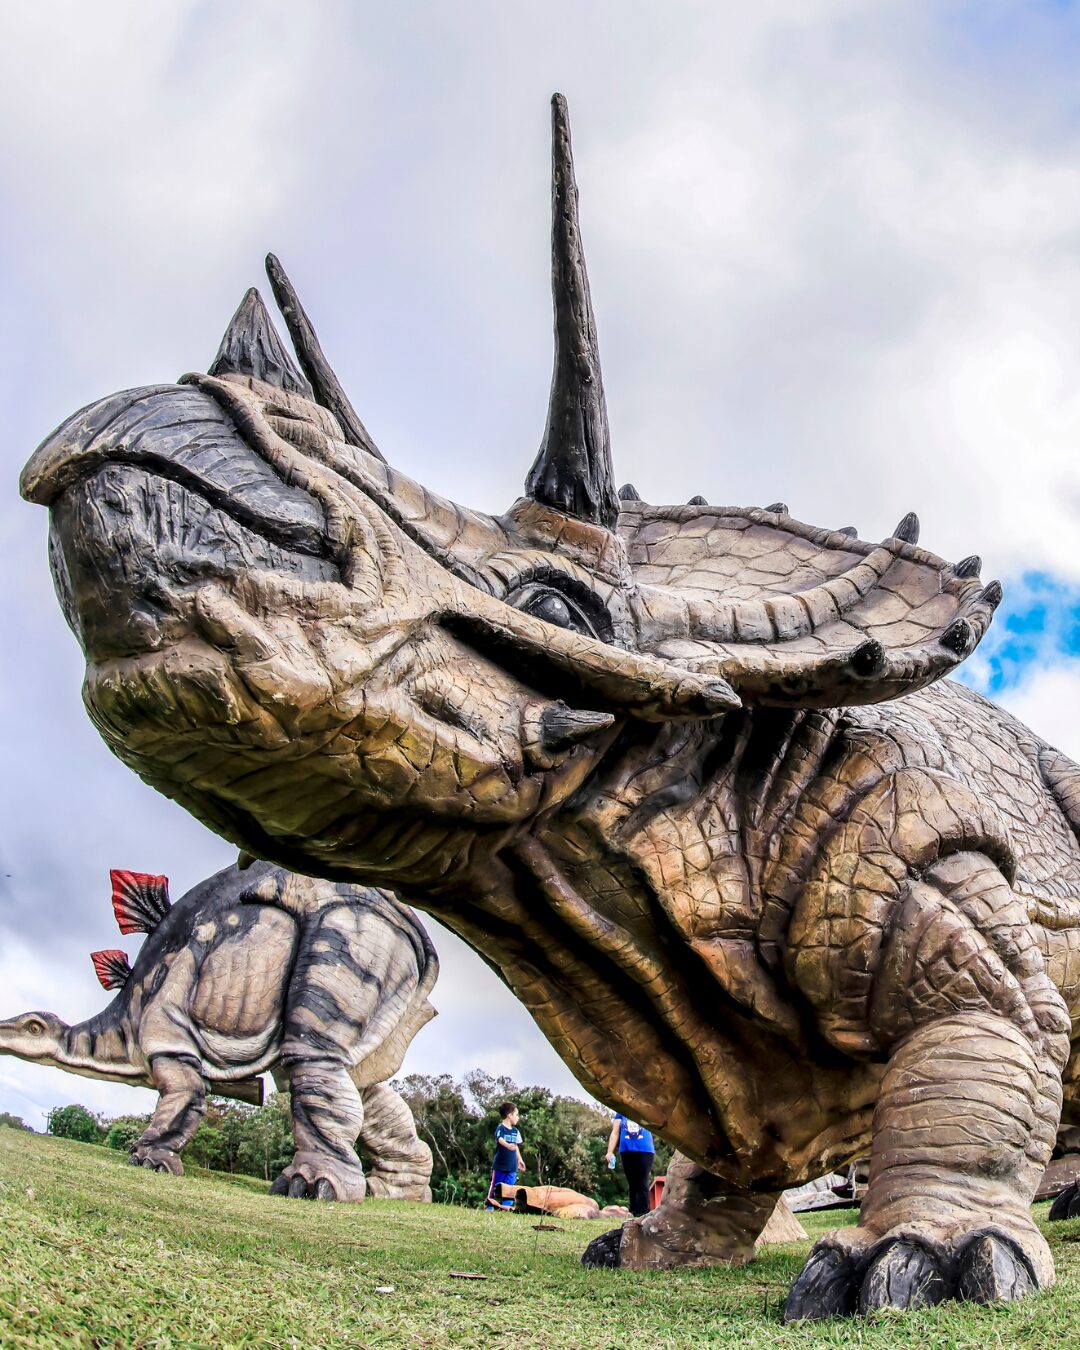 Dinossauros vão “invadir” o Parque Cachoeira entre os dias 18 a 31 de março